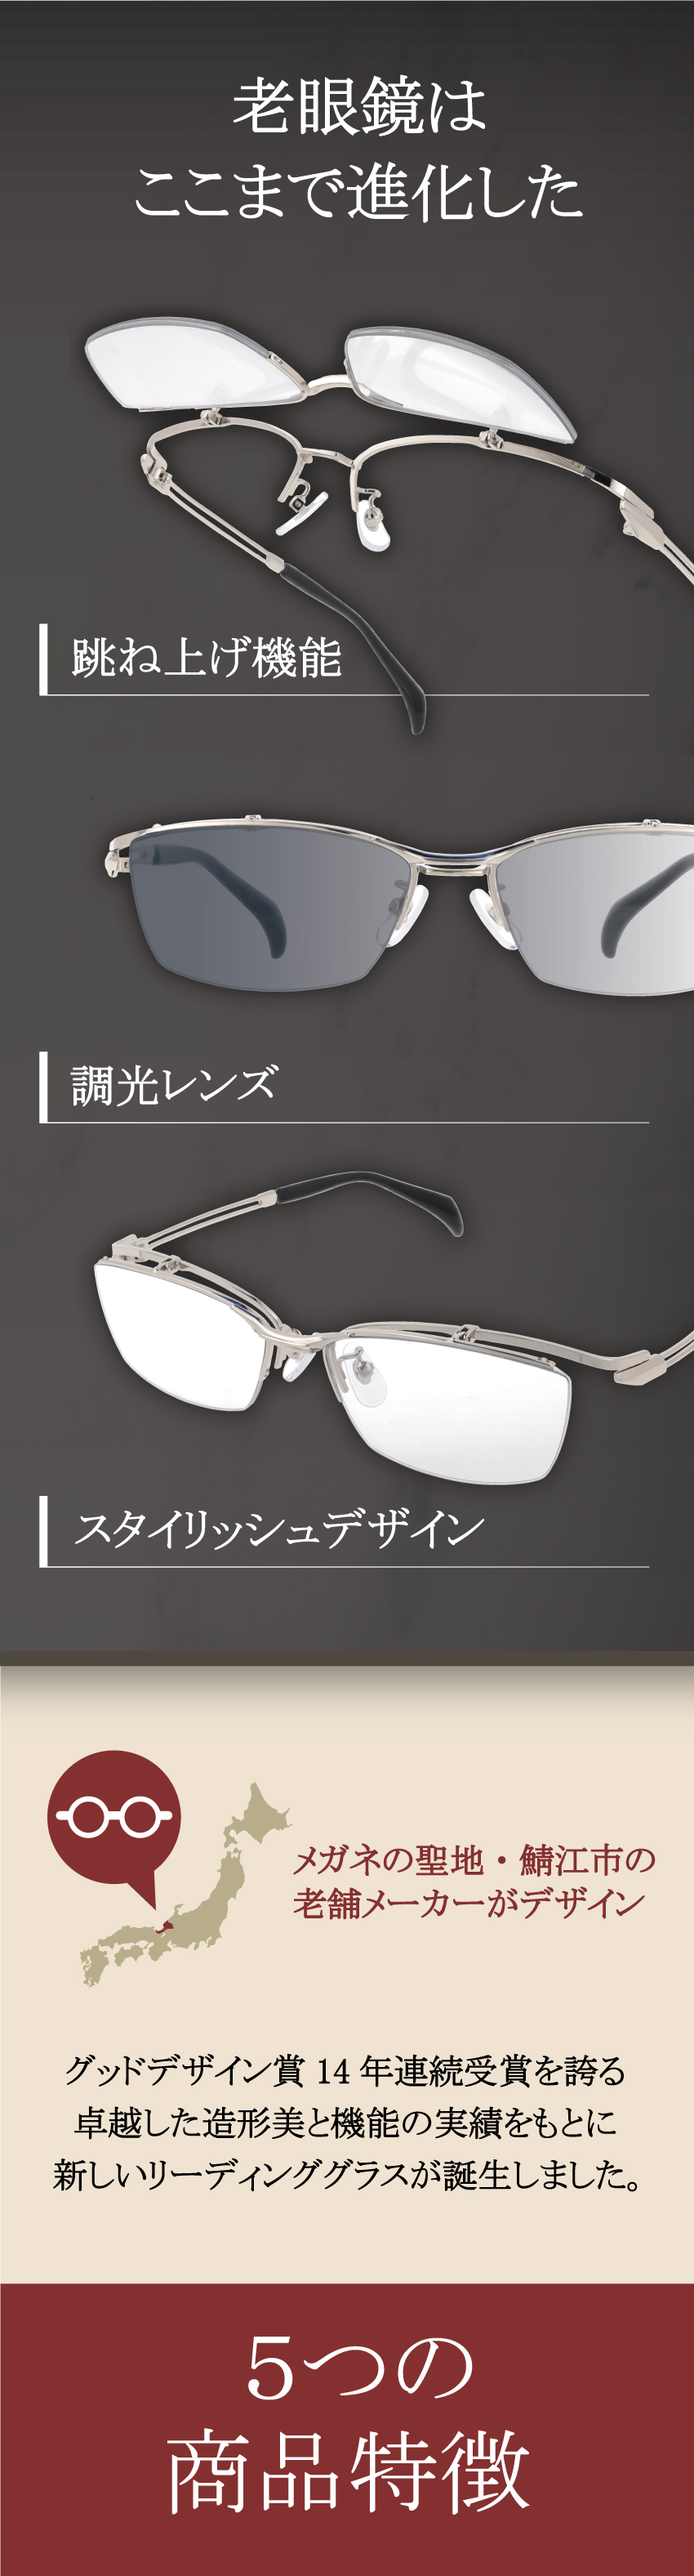 眼鏡の聖地・鯖江のメーカーが企画デザイン